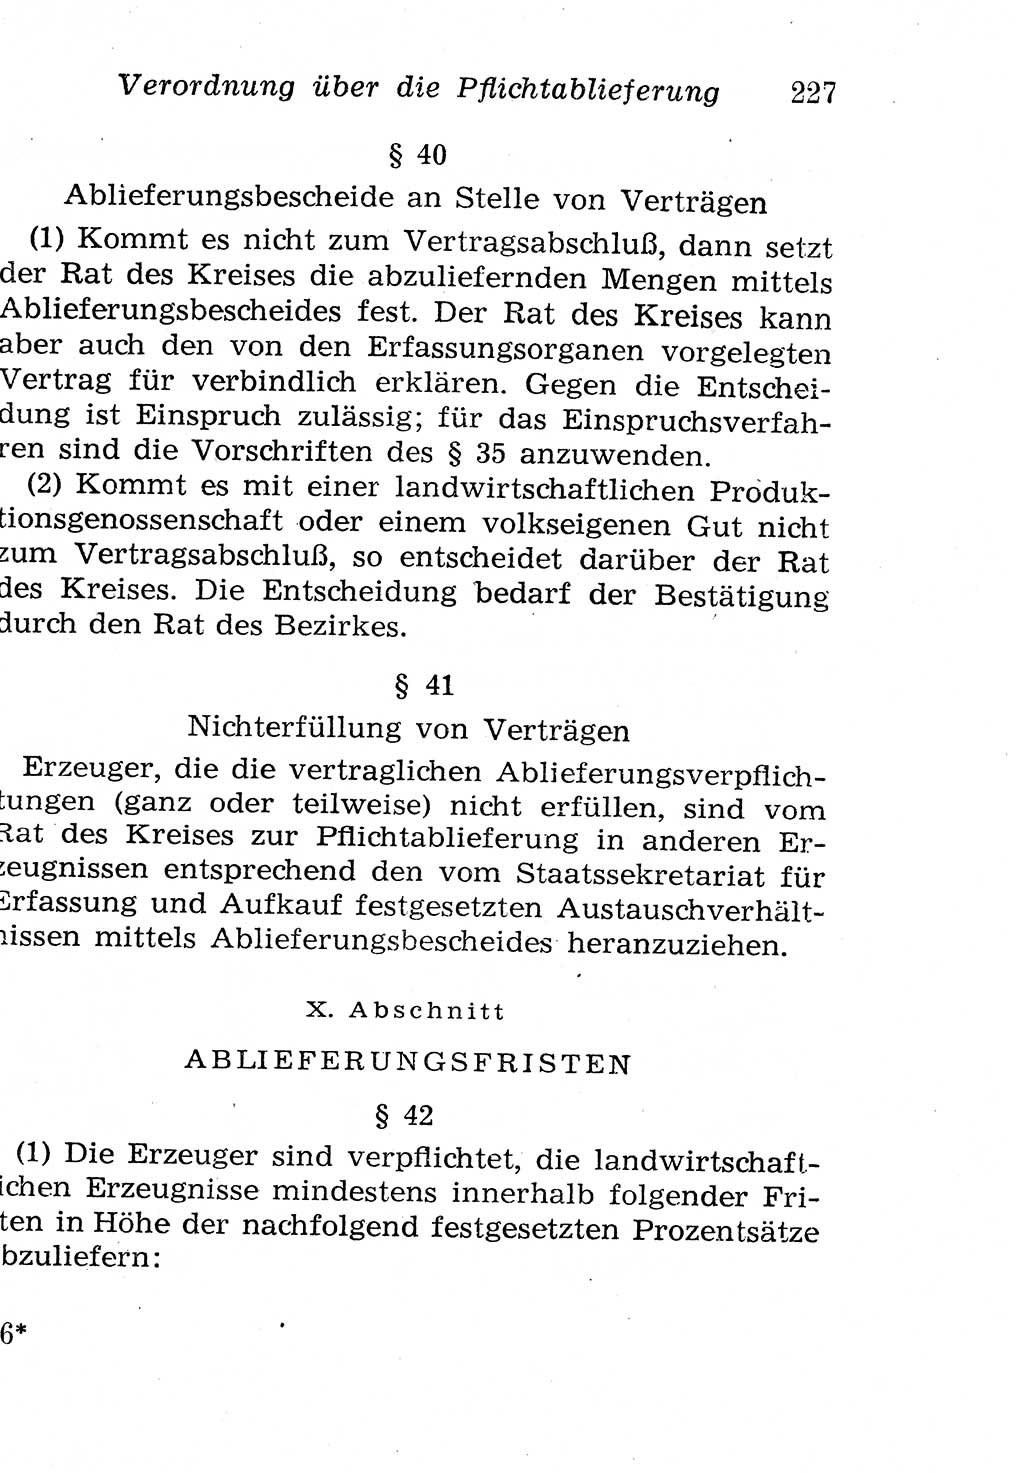 Strafgesetzbuch (StGB) und andere Strafgesetze [Deutsche Demokratische Republik (DDR)] 1958, Seite 227 (StGB Strafges. DDR 1958, S. 227)